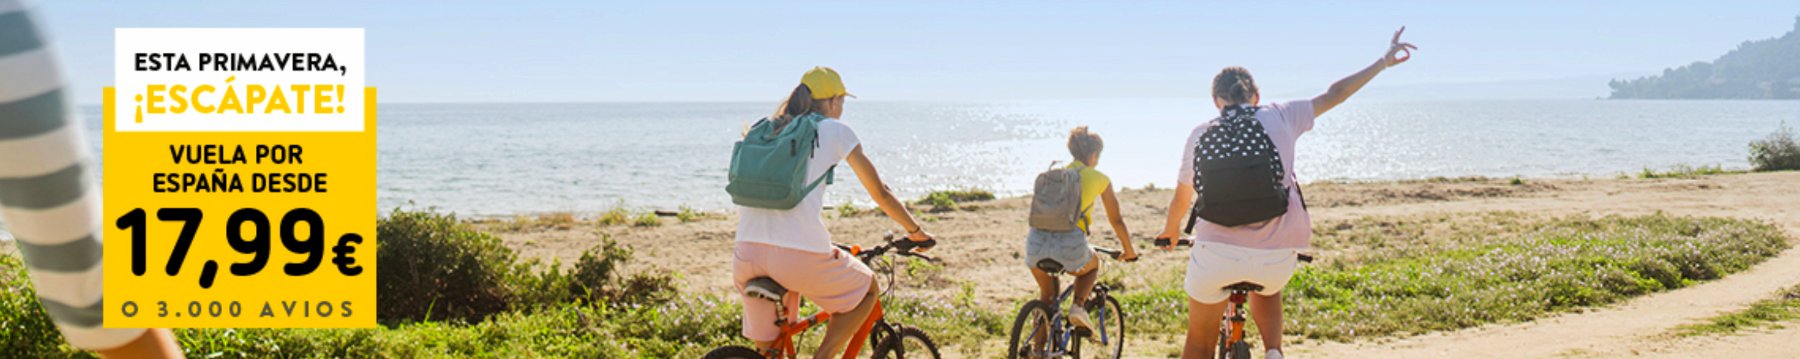 un grupo de personas en bicicleta en la playa